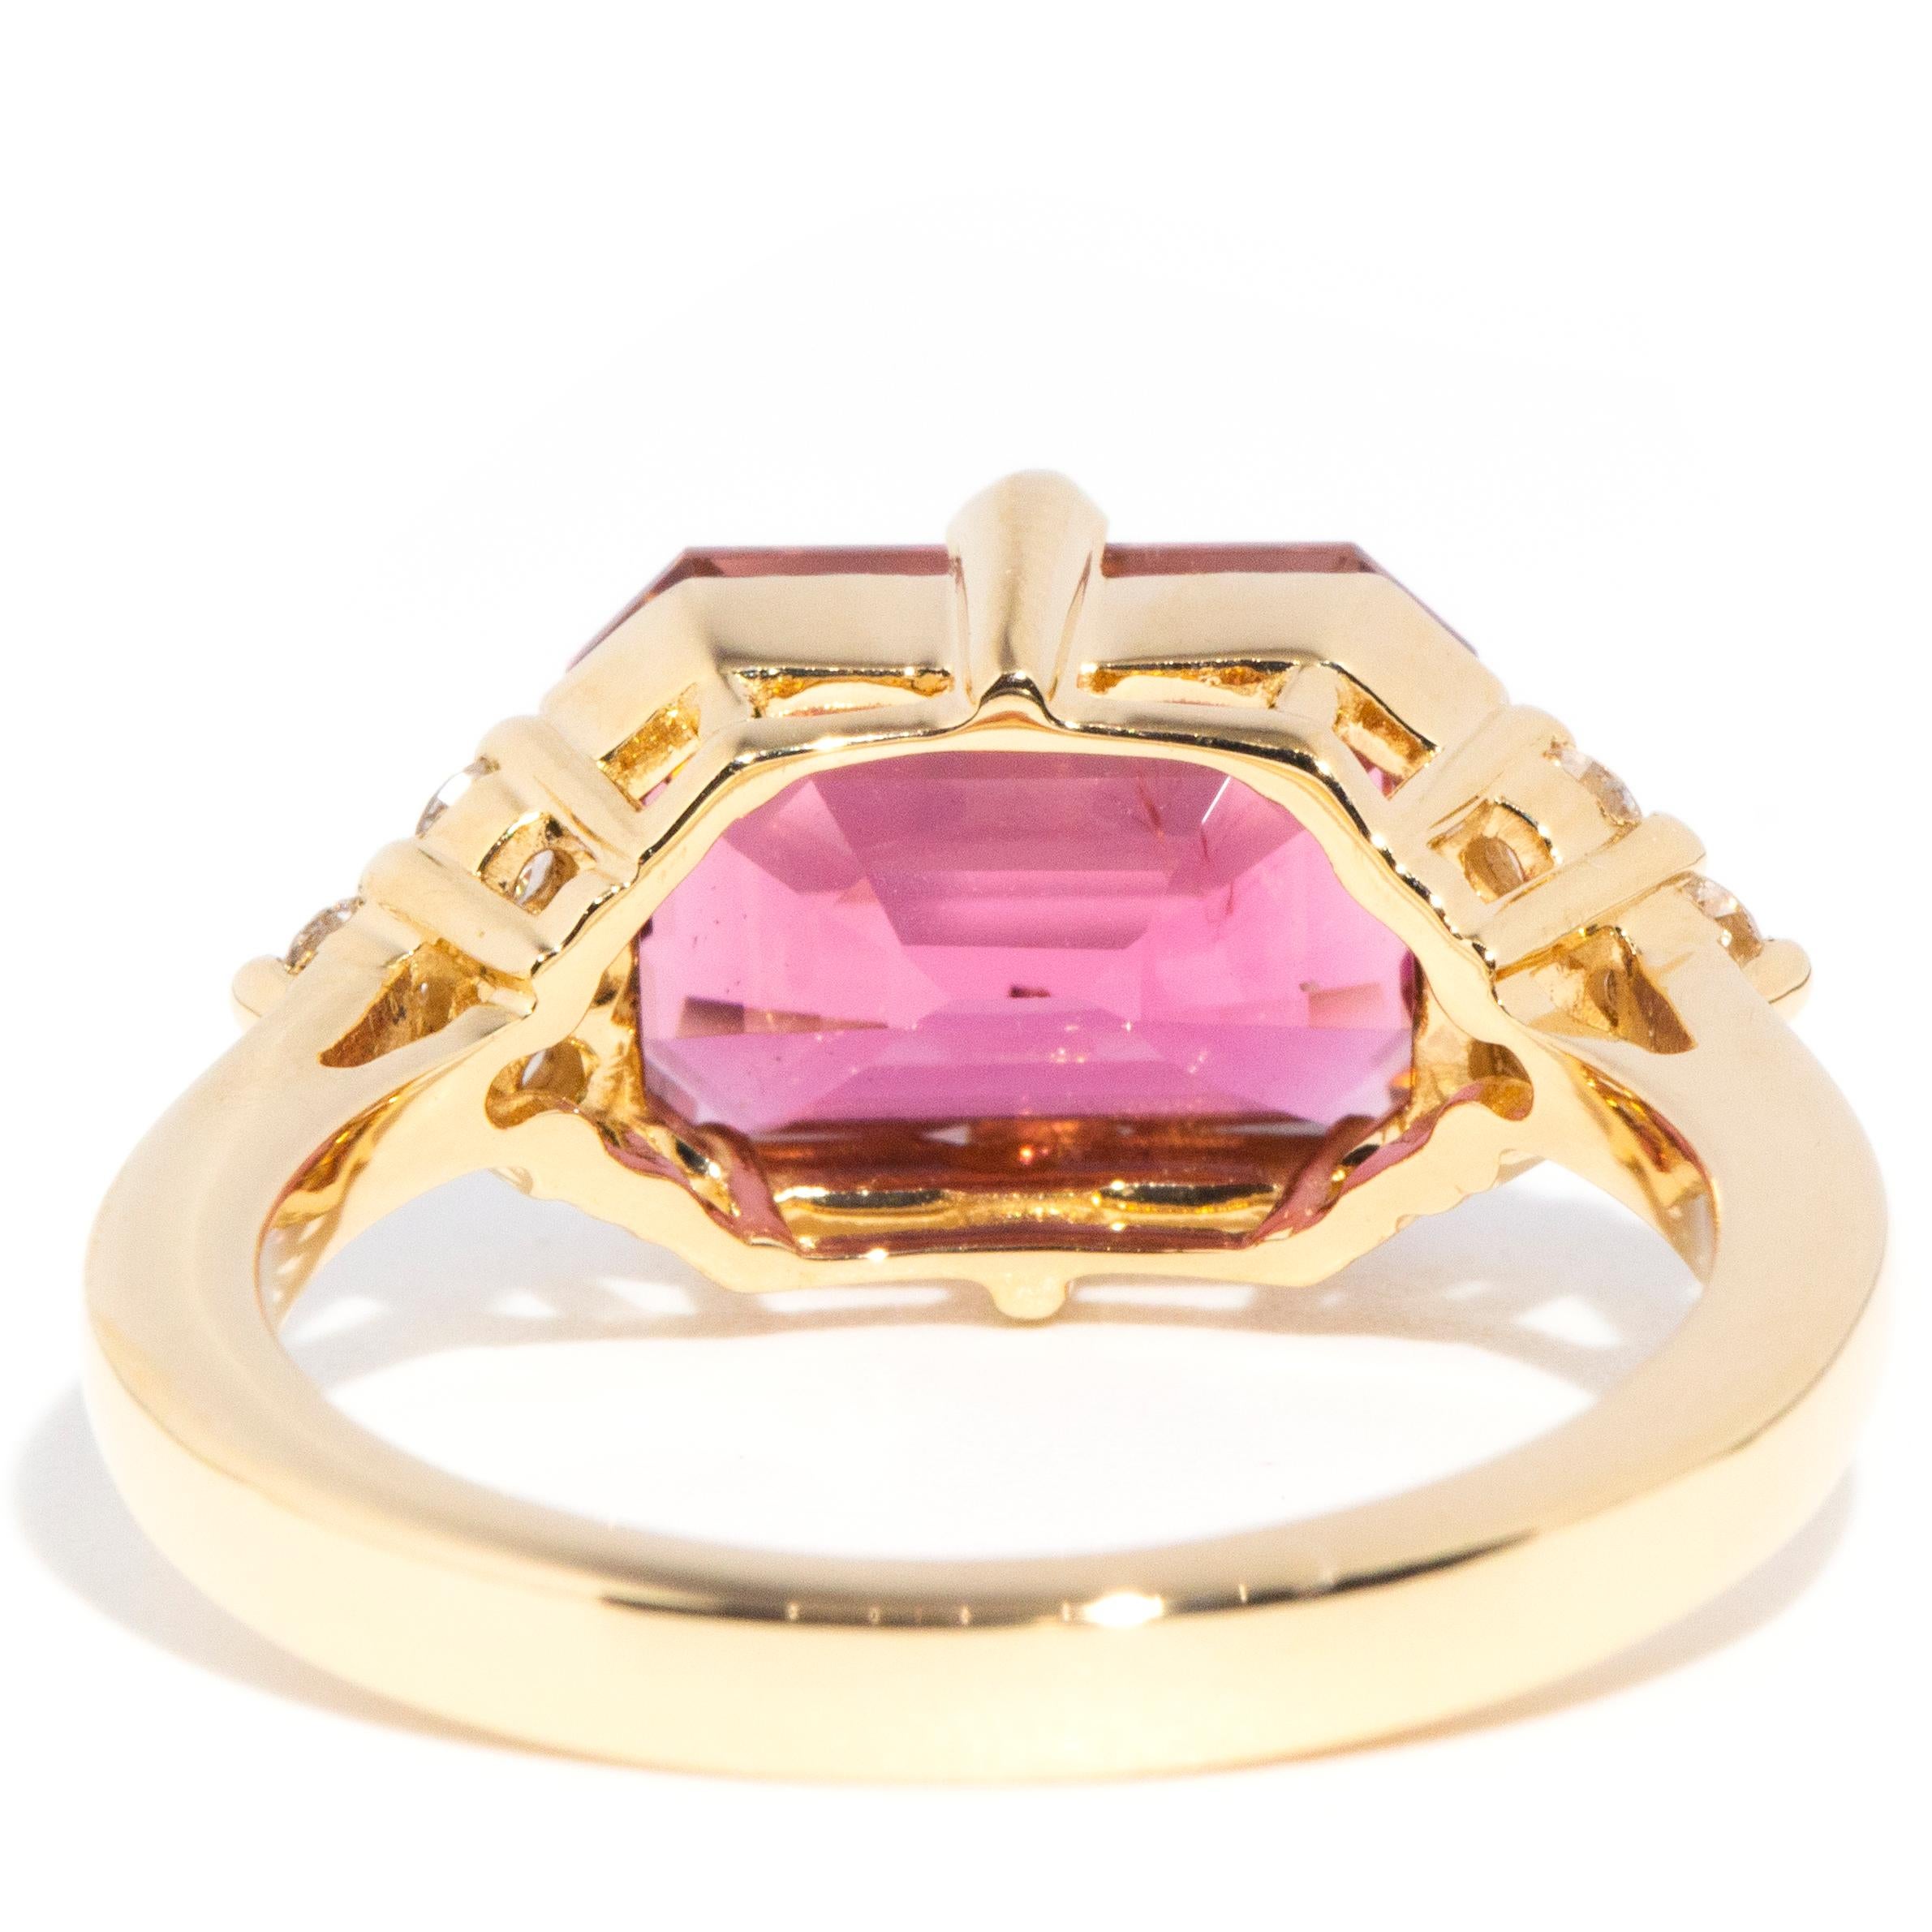 4.09 Carat Pink Tourmaline and Diamond Contemporary 18 Carat Yellow Gold Ring 3